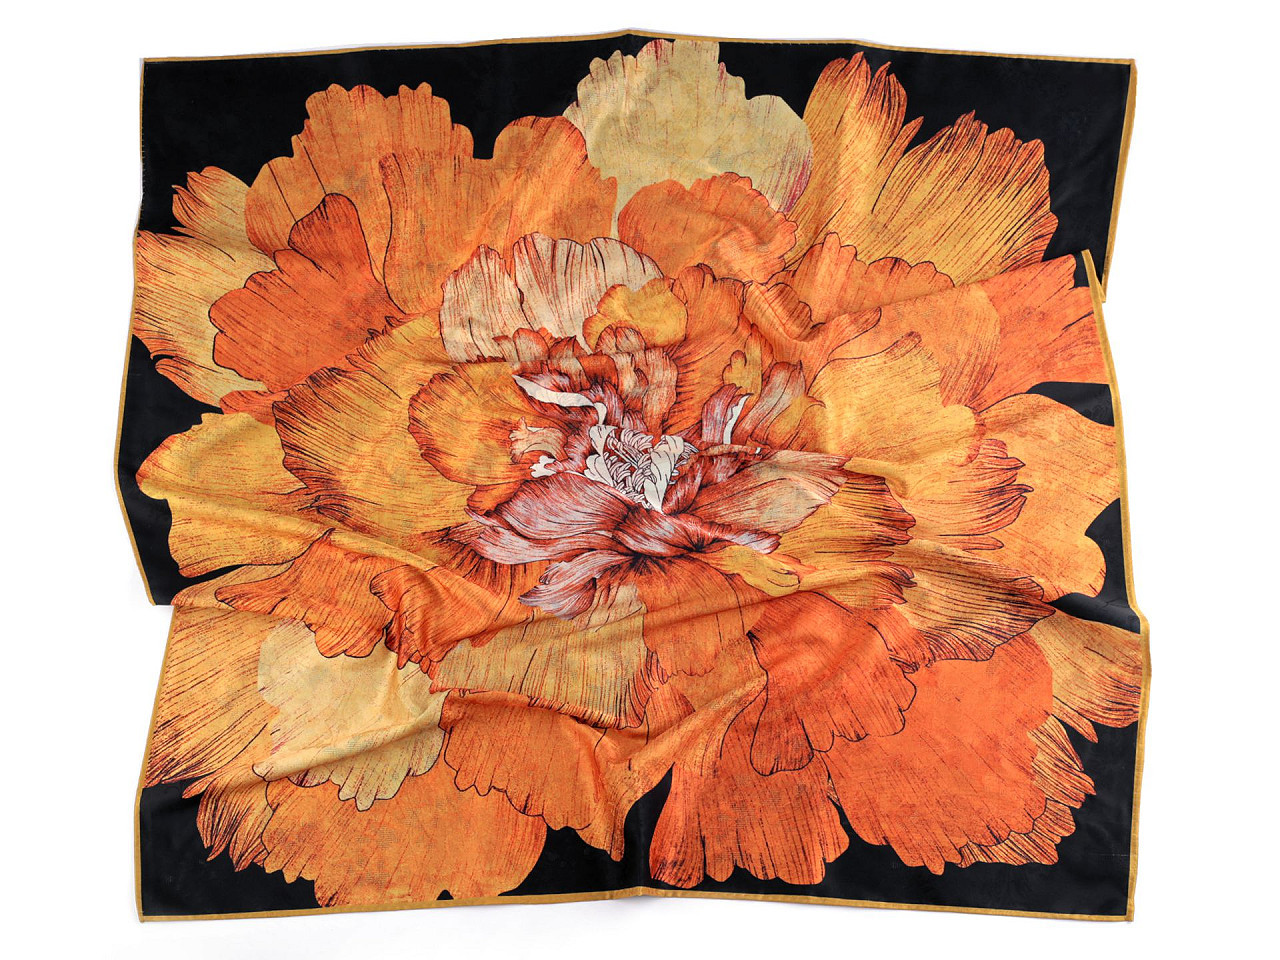 Saténový šátek 70x70 cm, barva 1 oranžová střední